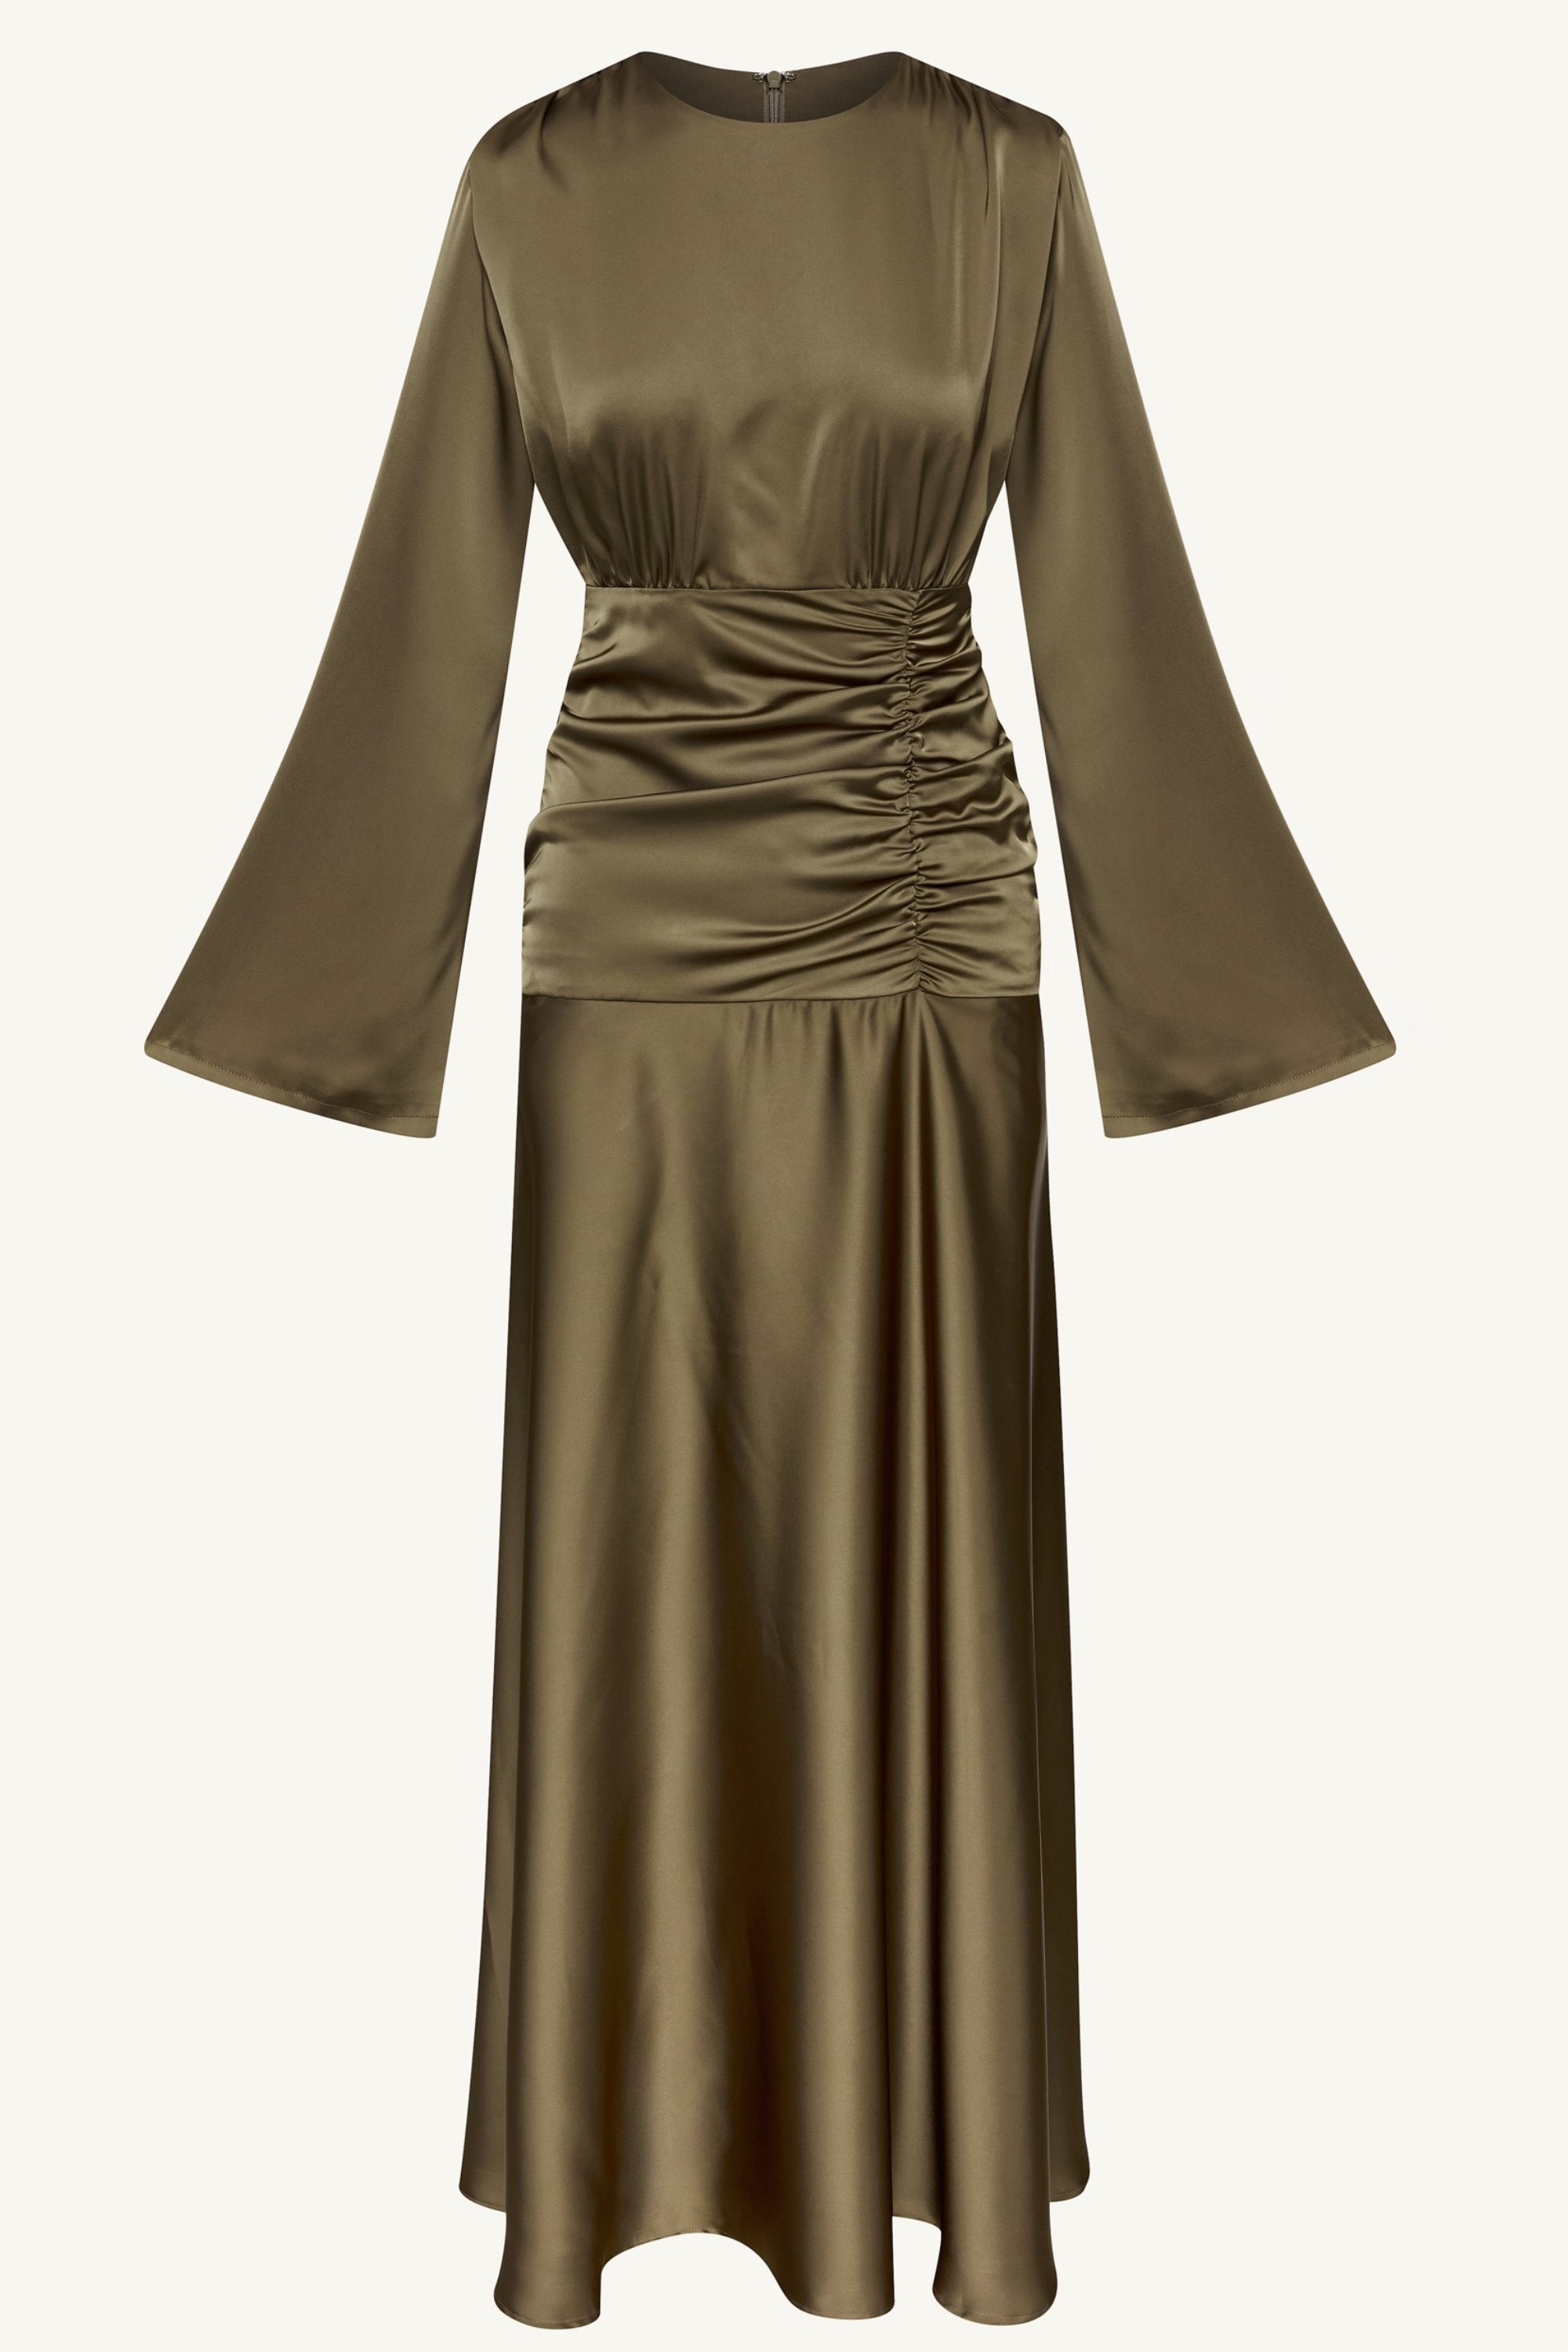 Shams Satin Side Rouched Maxi Dress - Olive Clothing Veiled 